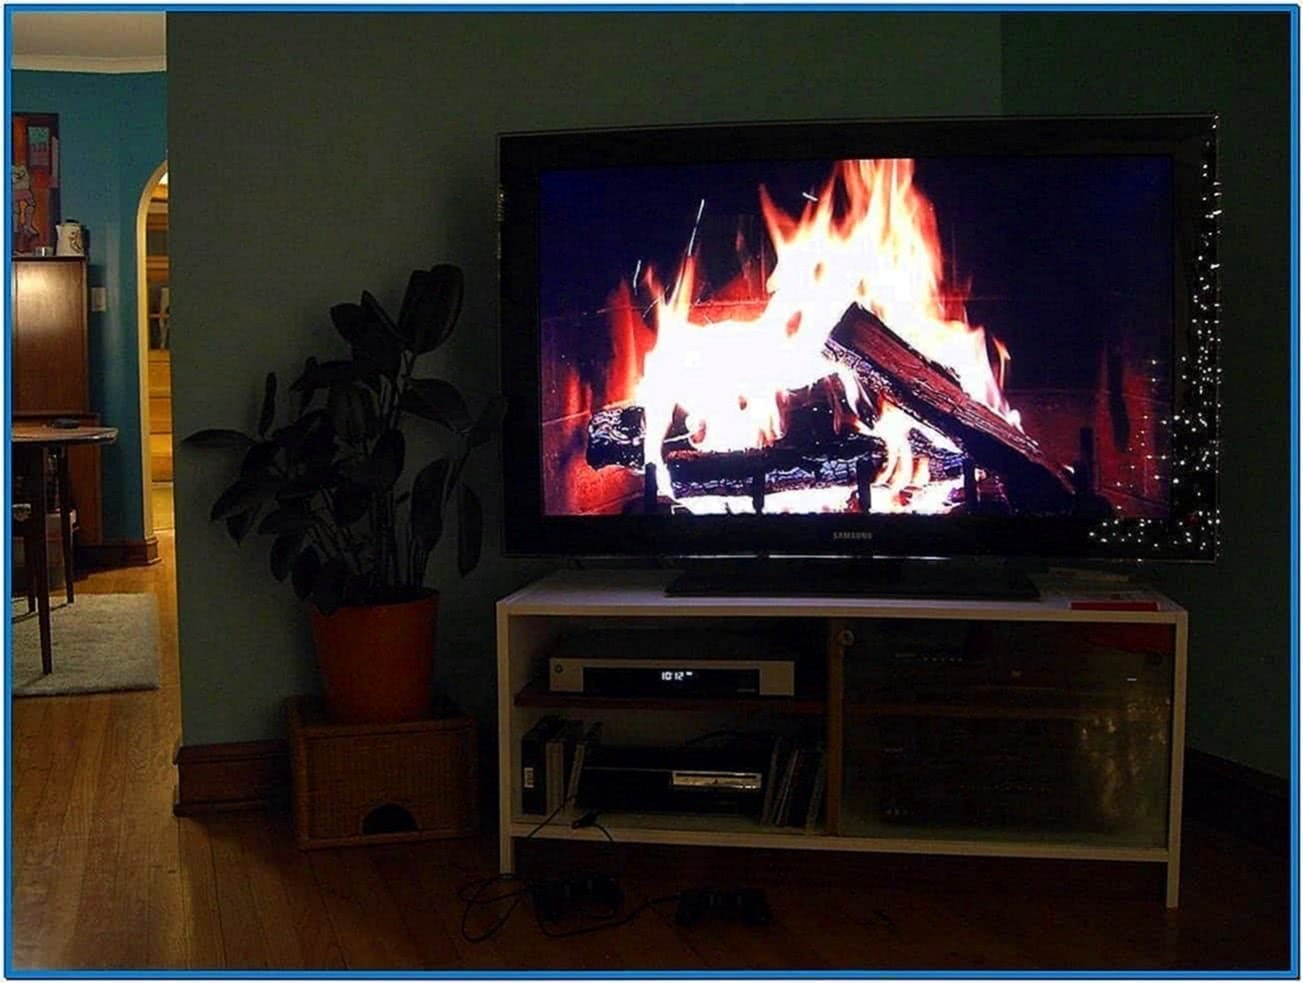 Log Fire Screensaver for TV